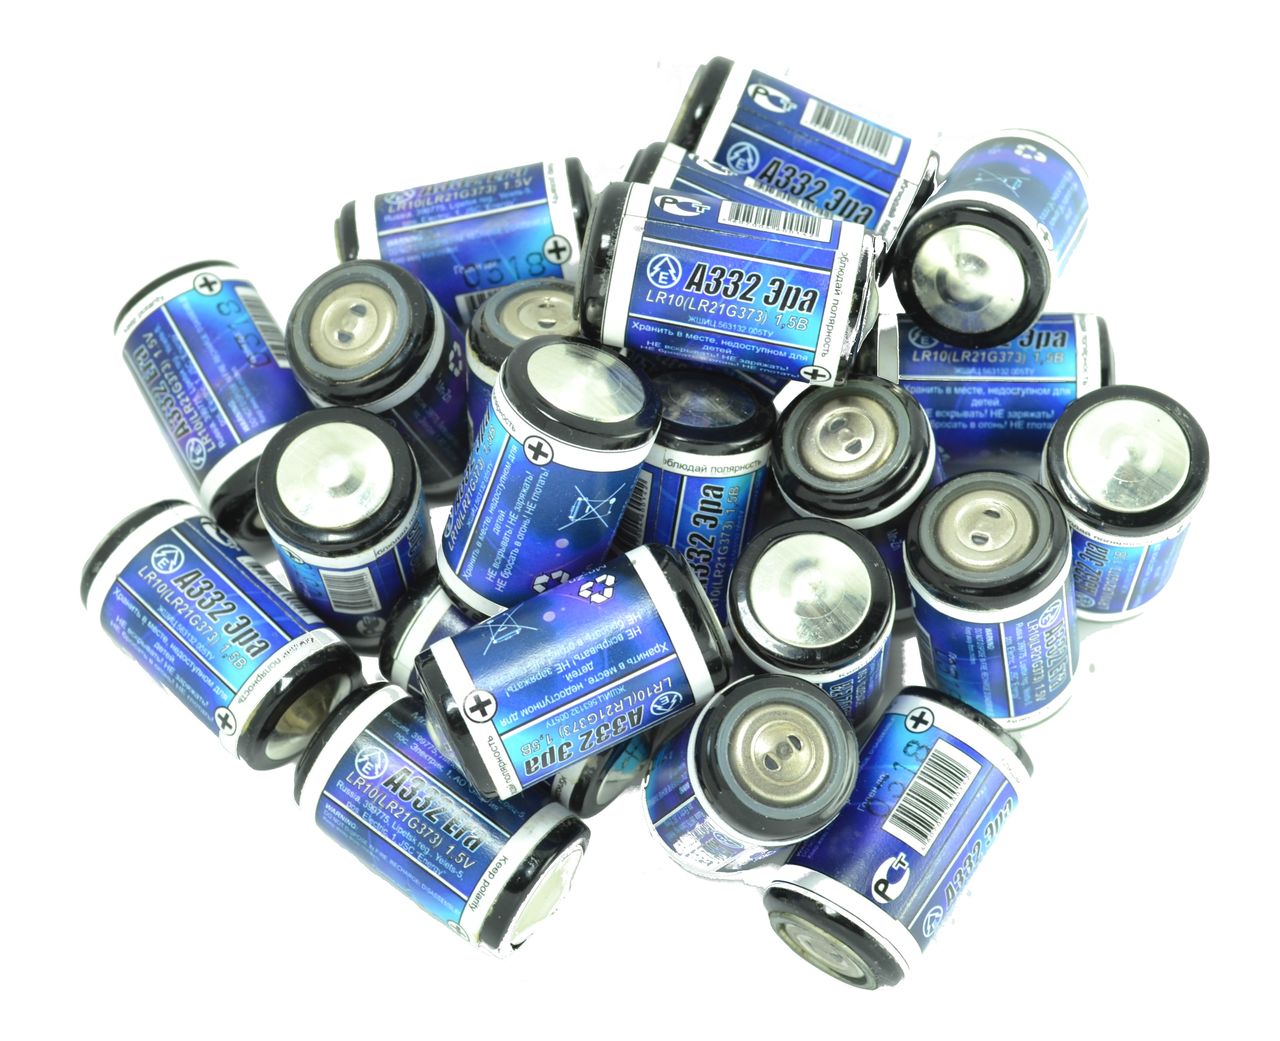 Батарейка с форм-фактором LR10 - источник питания с увеличенной емкостью